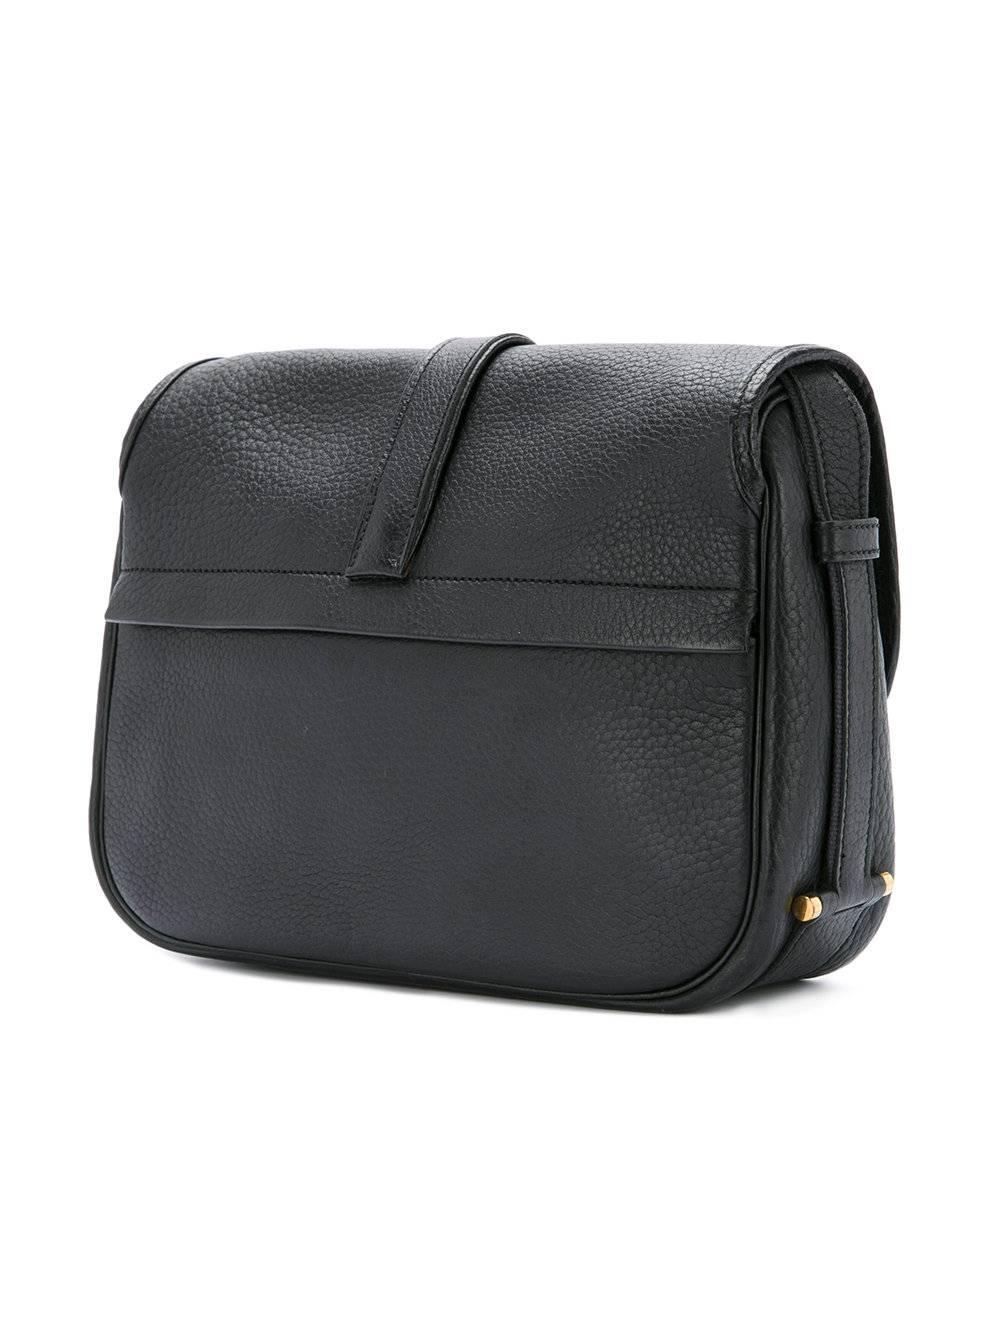 Women's Hermes Black Leather Gold Hardware Saddle Carryall Flap Shoulder Bag